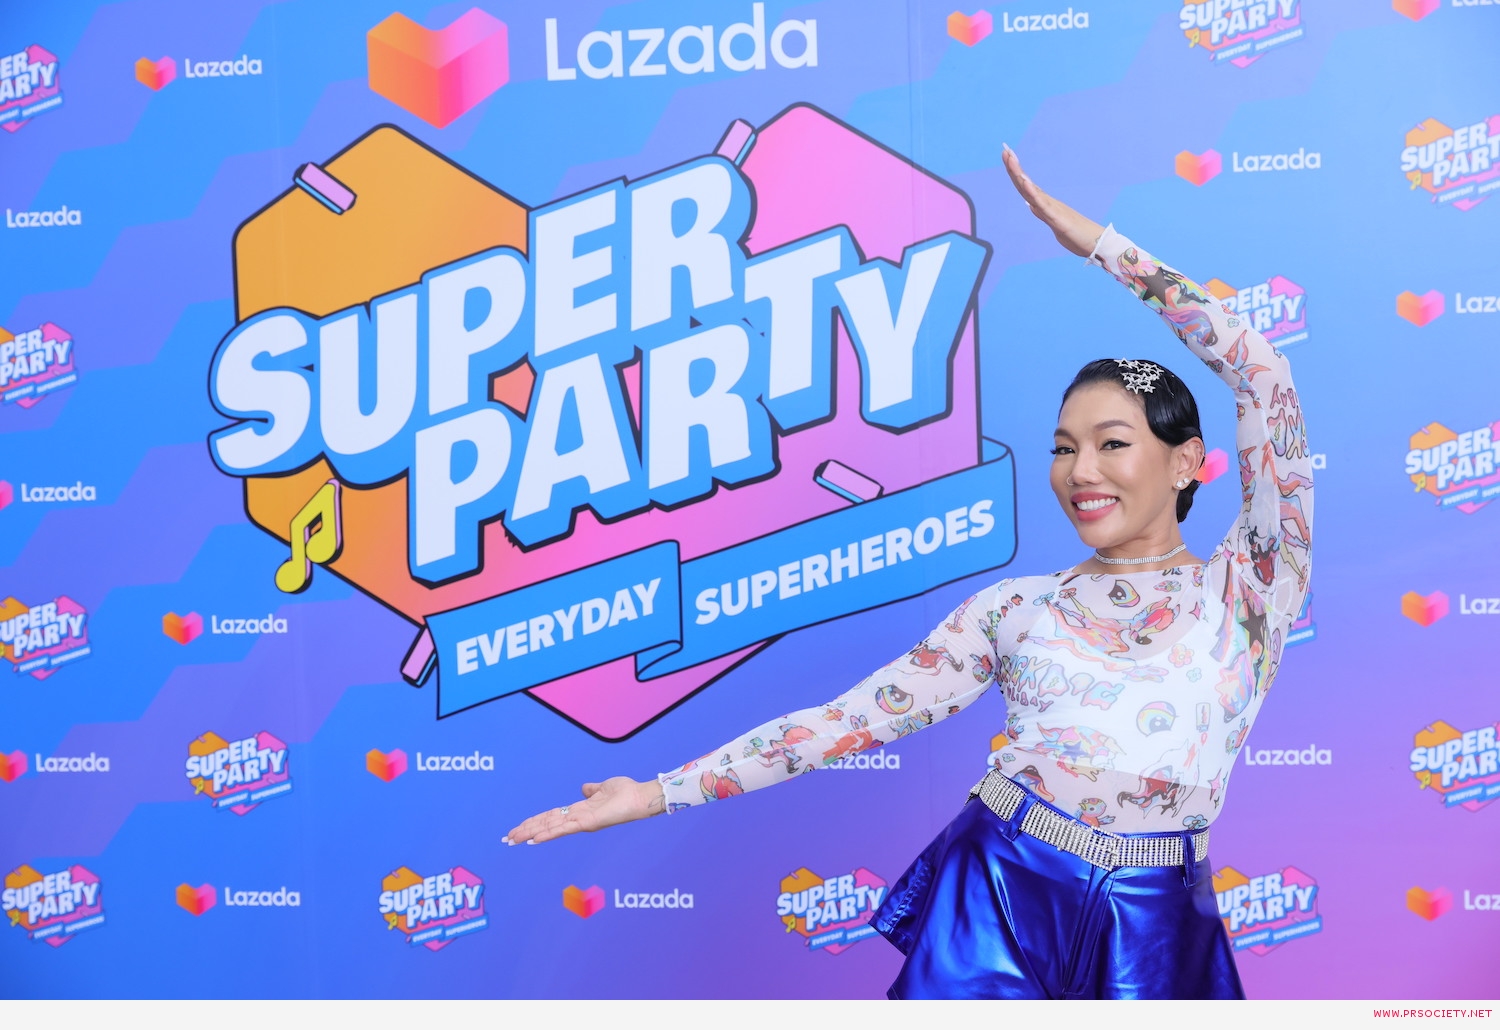 Da_Lazada Super Party (1)